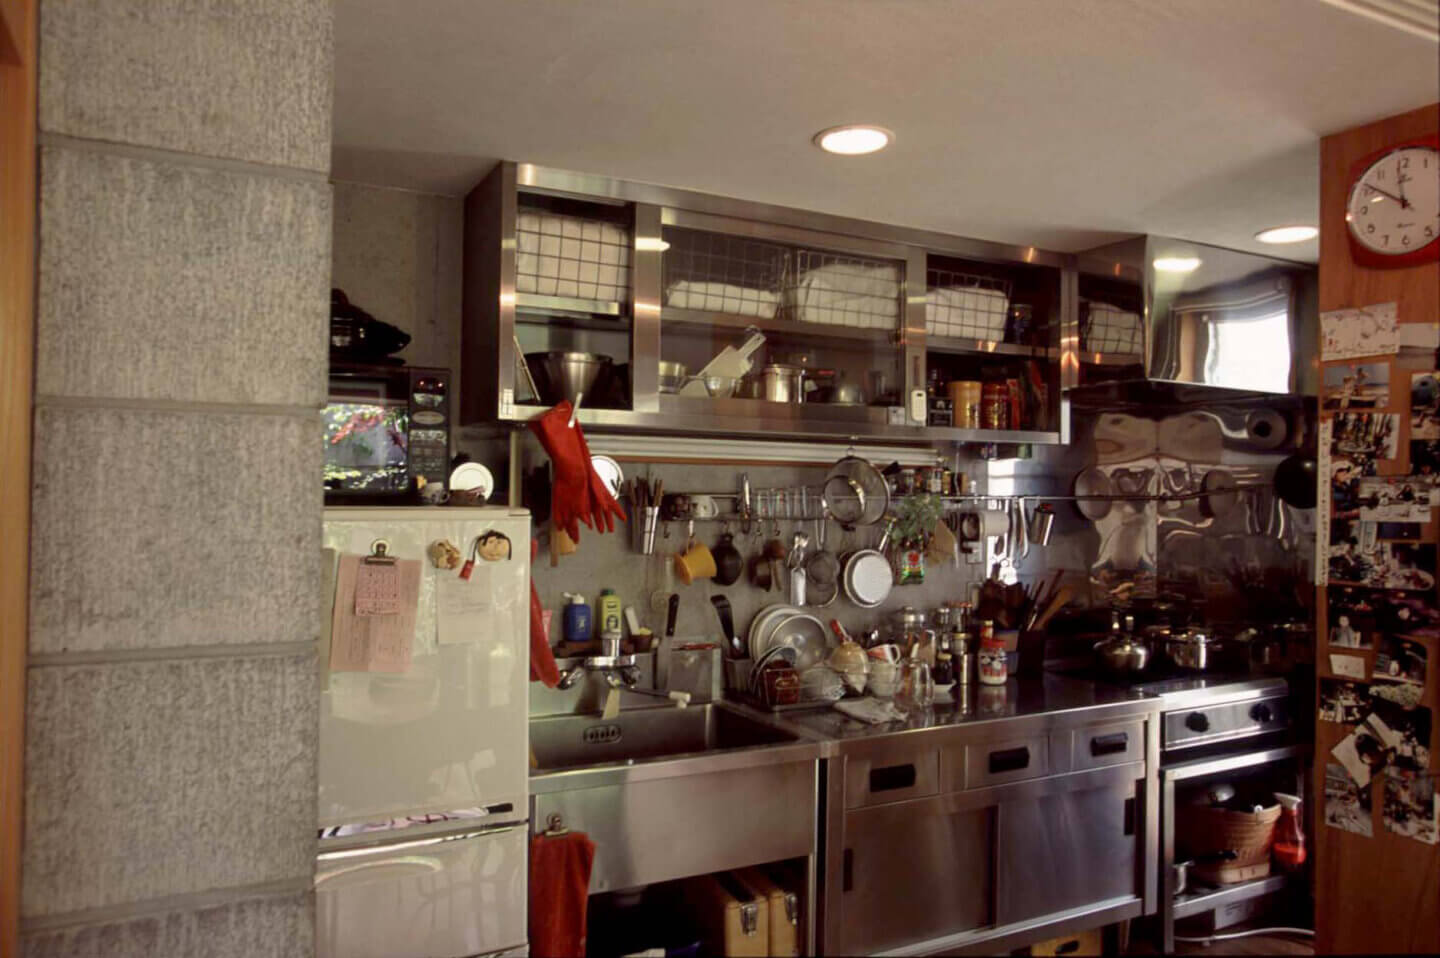 プロ仕様の厨房用品のリサイクル店で少しずつ集めた調理器具がたくさん収納されている、コンクリートとステンレスのキッチン